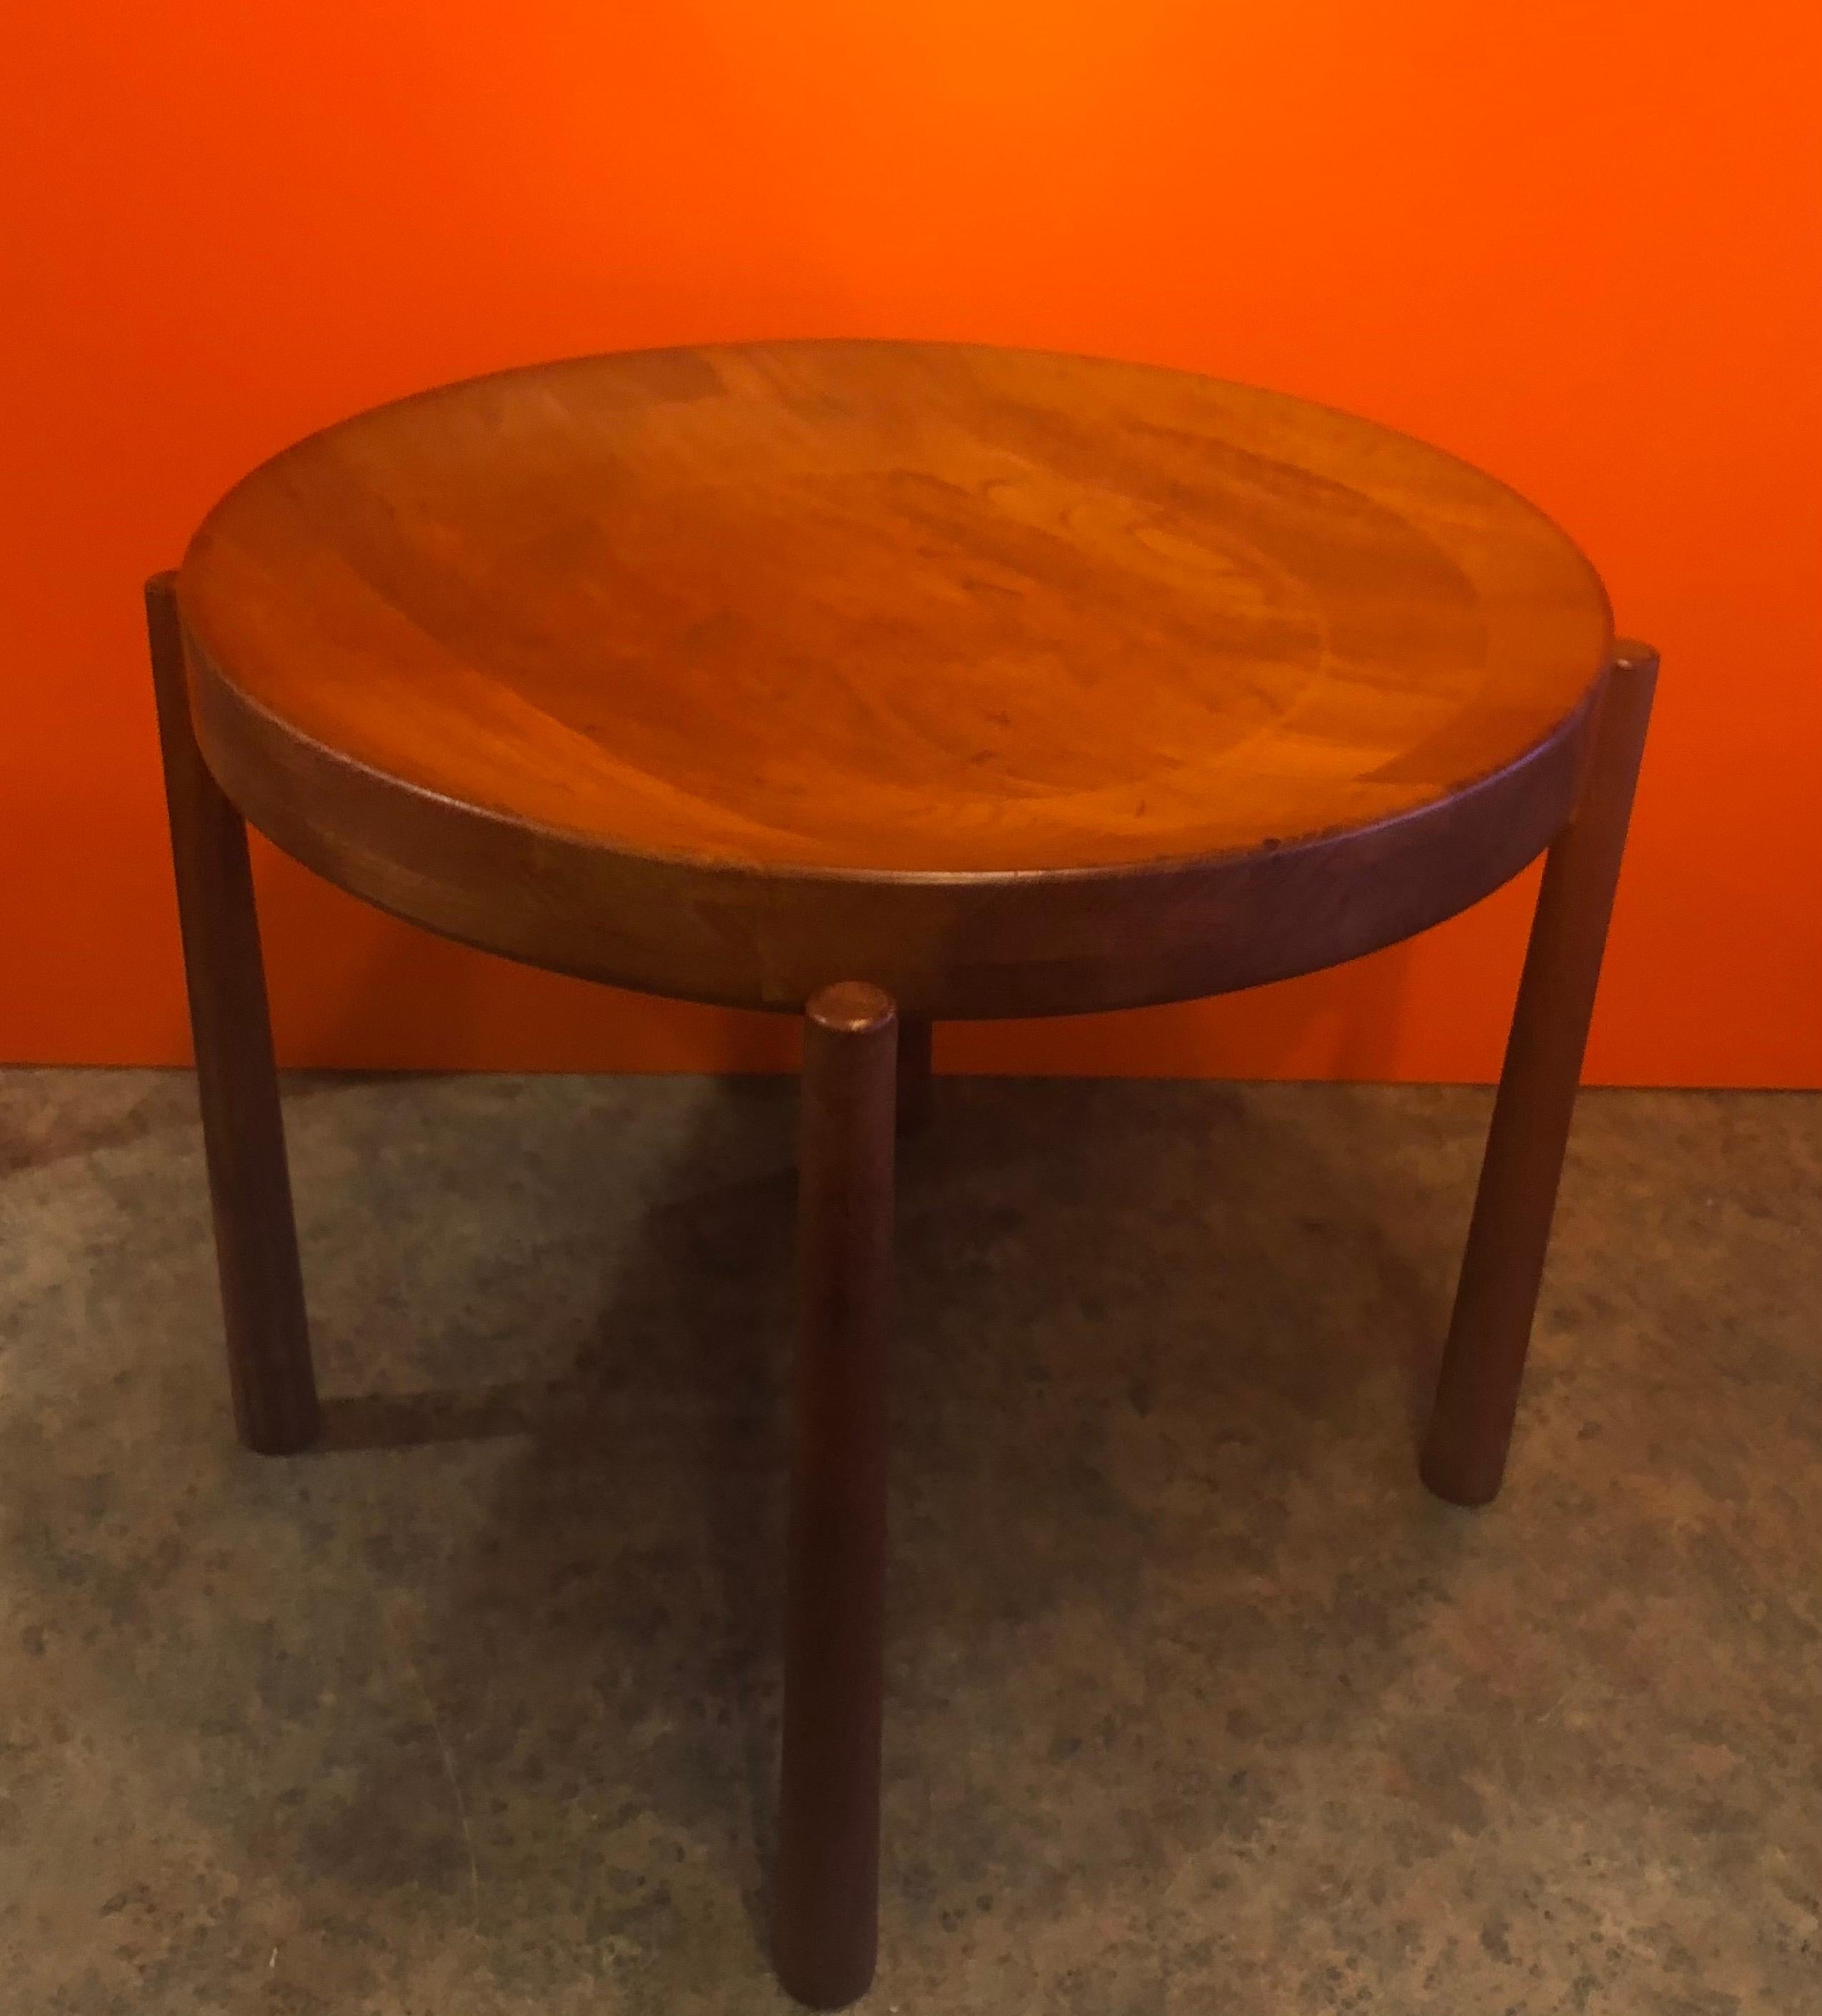 Beistelltisch / Obstschale von Jens Harald Quistgaard dor DUX aus Schweden, ca. 1960er Jahre. Der Tisch hat eine abnehmbare gewölbte Platte, die als Versuch verwendet werden kann, und ist in sehr gutem Vintage-Zustand. Der Tisch misst 19,5